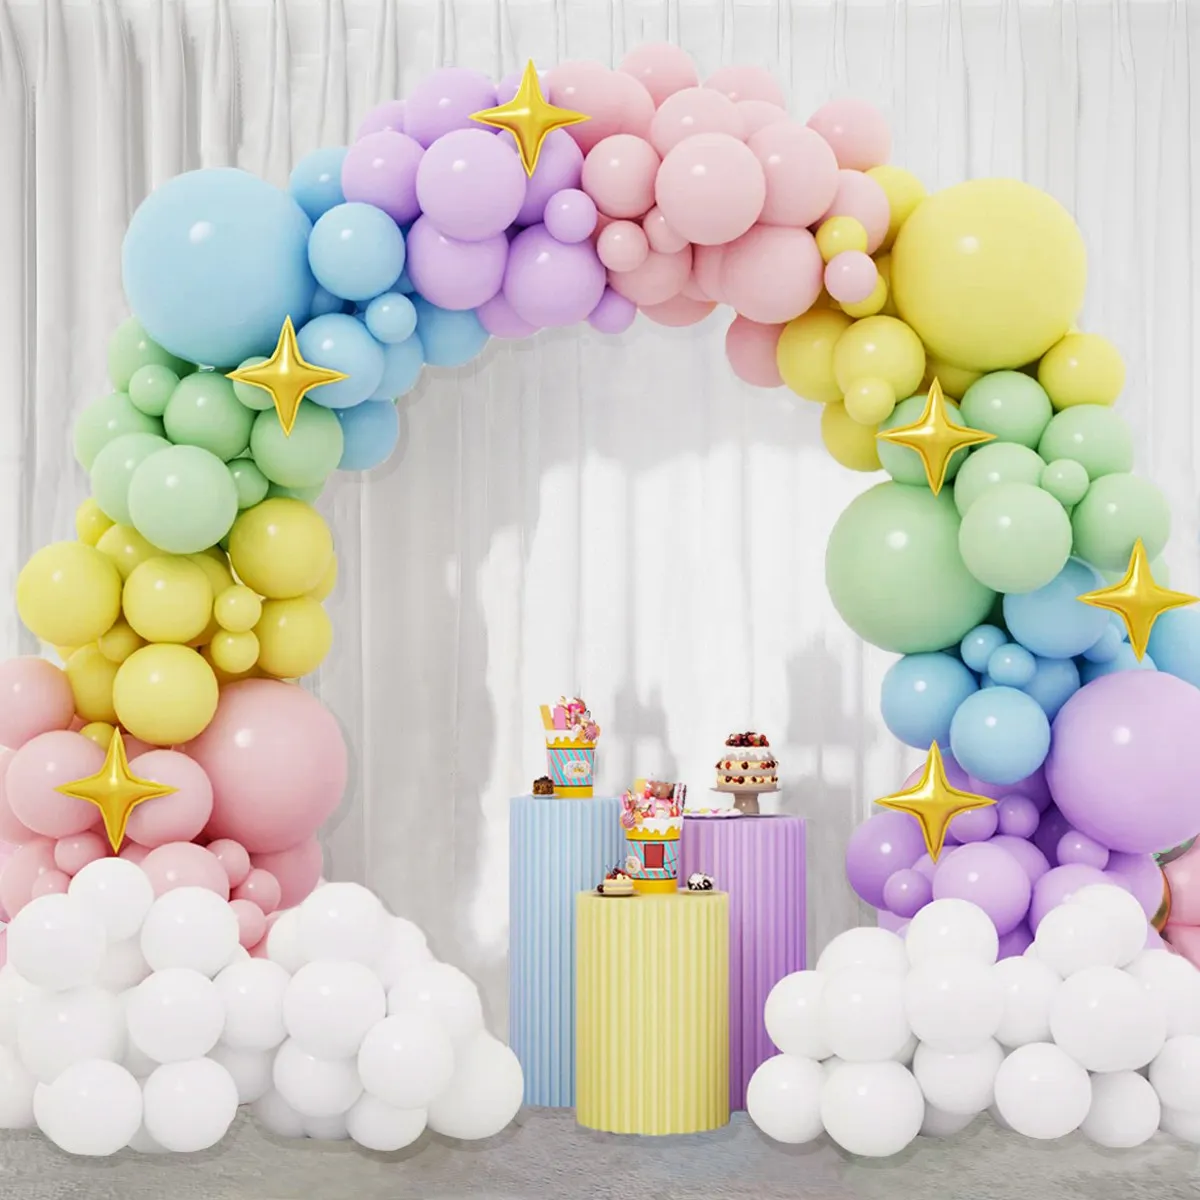 

Разноцветная Радужная гирлянда с воздушными шарами, украшение для детской вечеринки, свадьбы, дня рождения, для девочек, для разведения пола, крещения